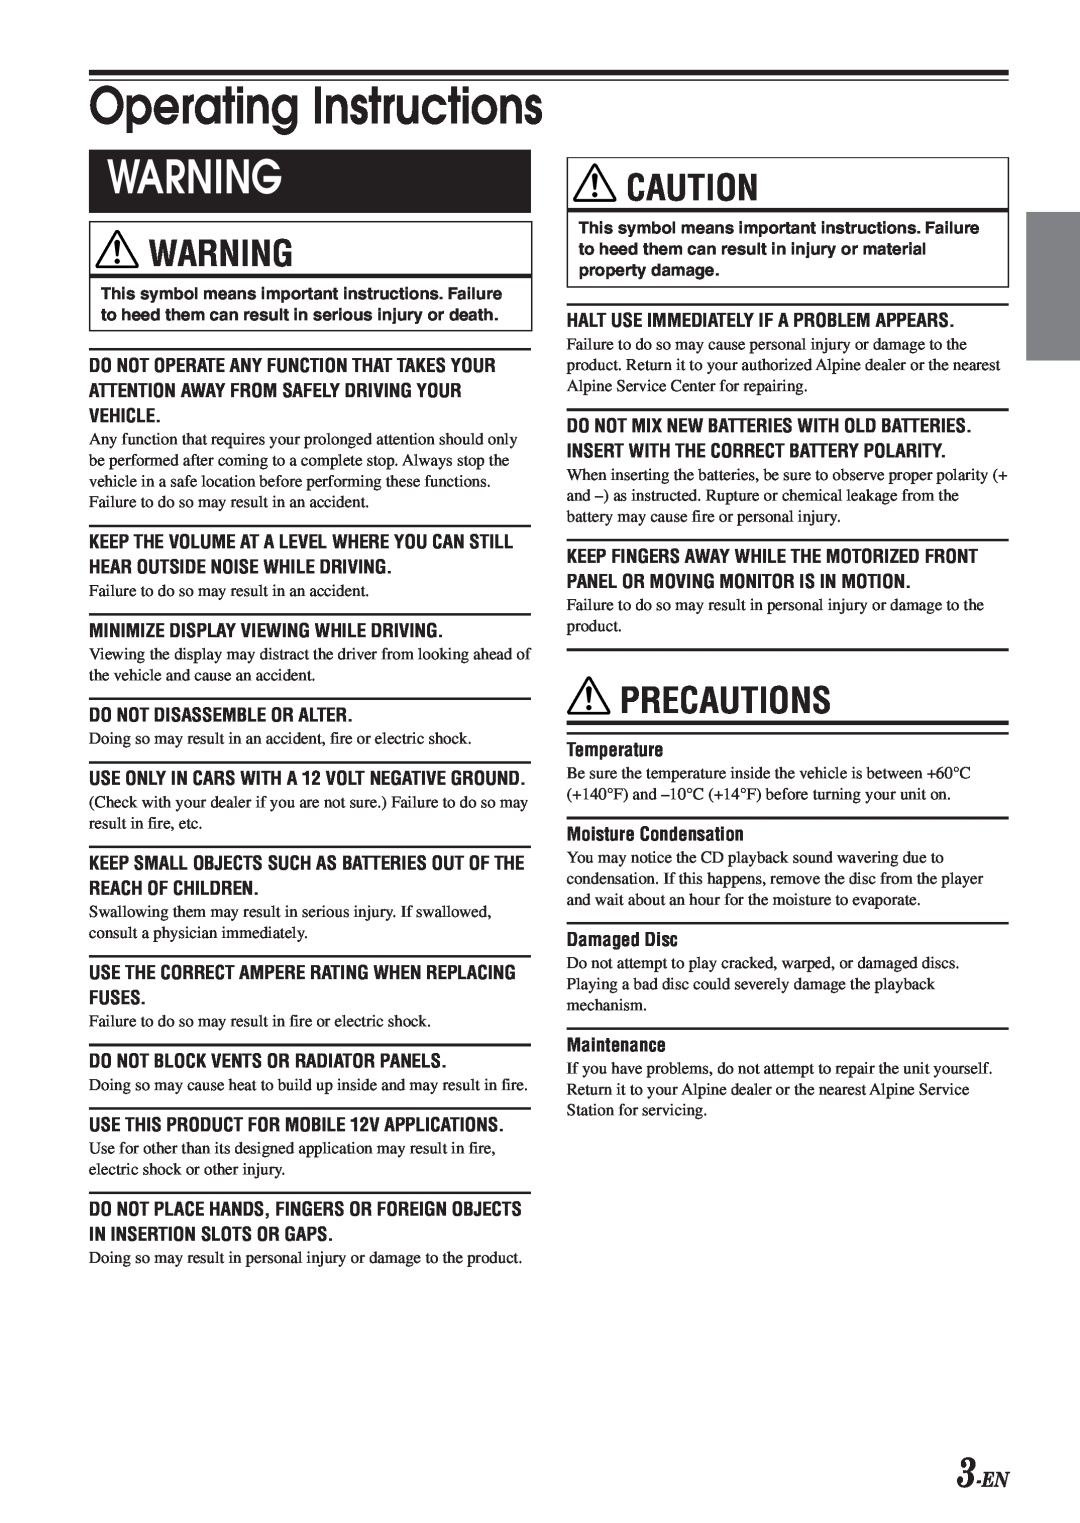 Alpine CDA-9833 owner manual Precautions, 3-EN, Operating Instructions 